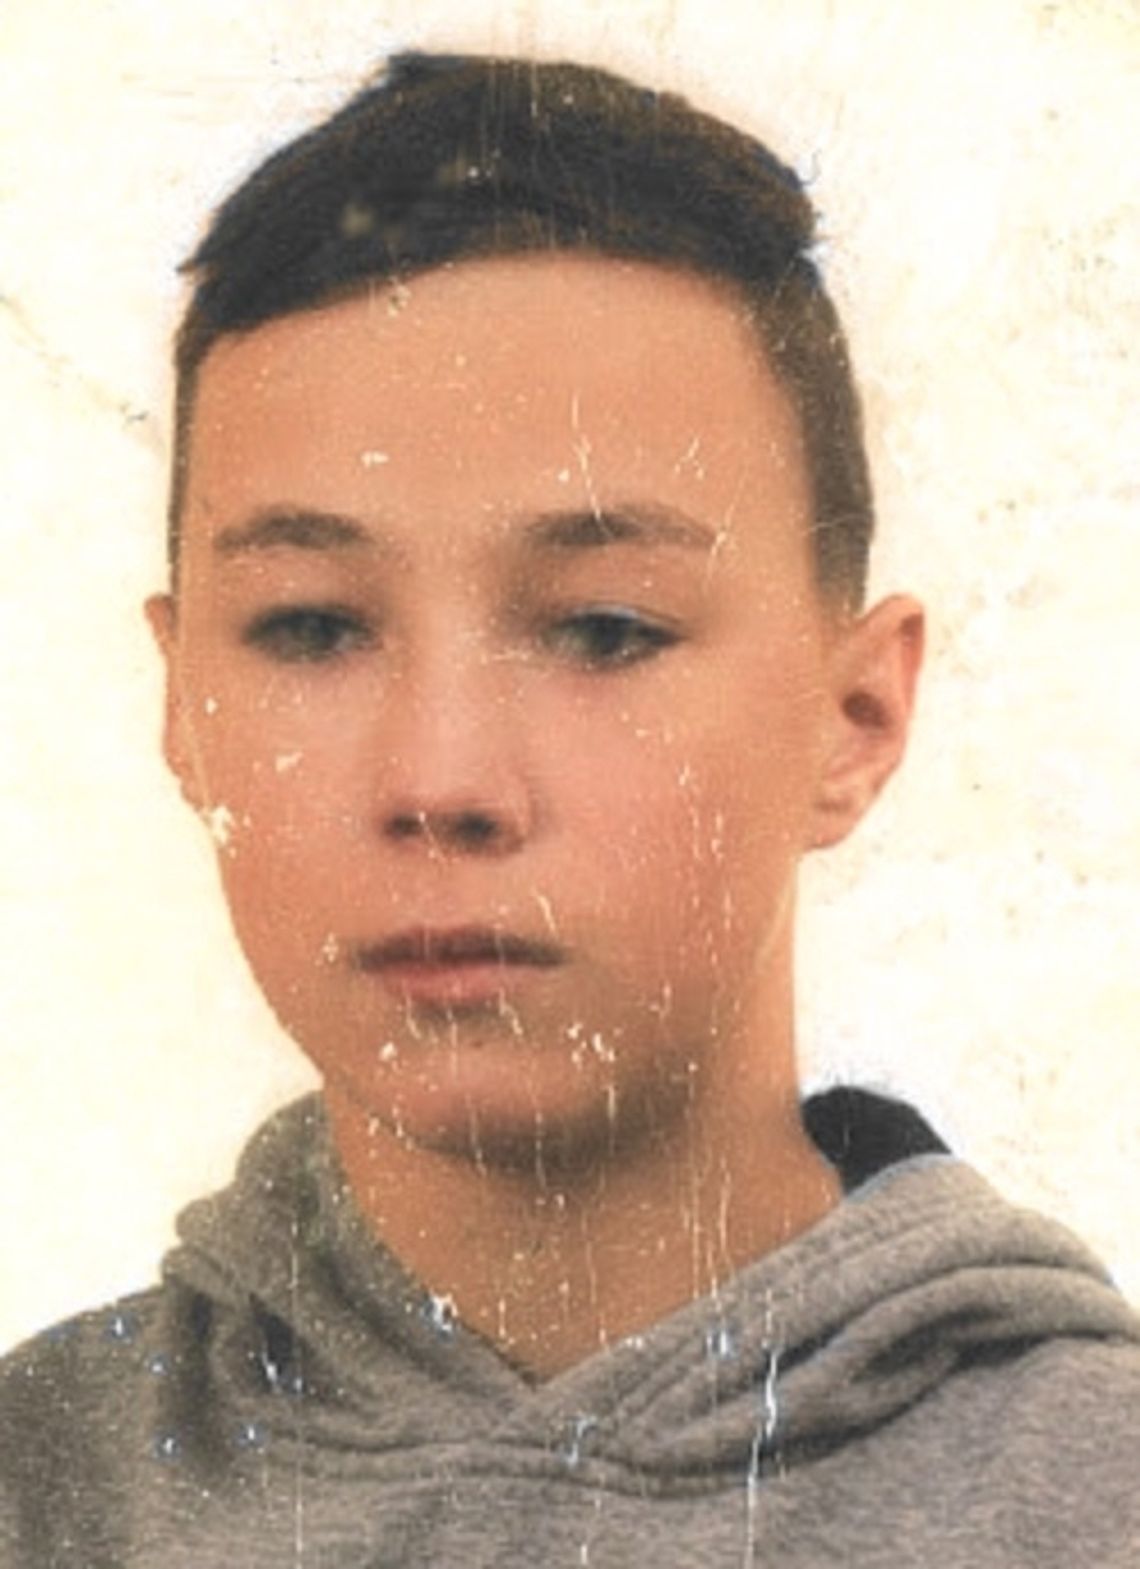 Poszukiwany 14-letni Maciej Zrol